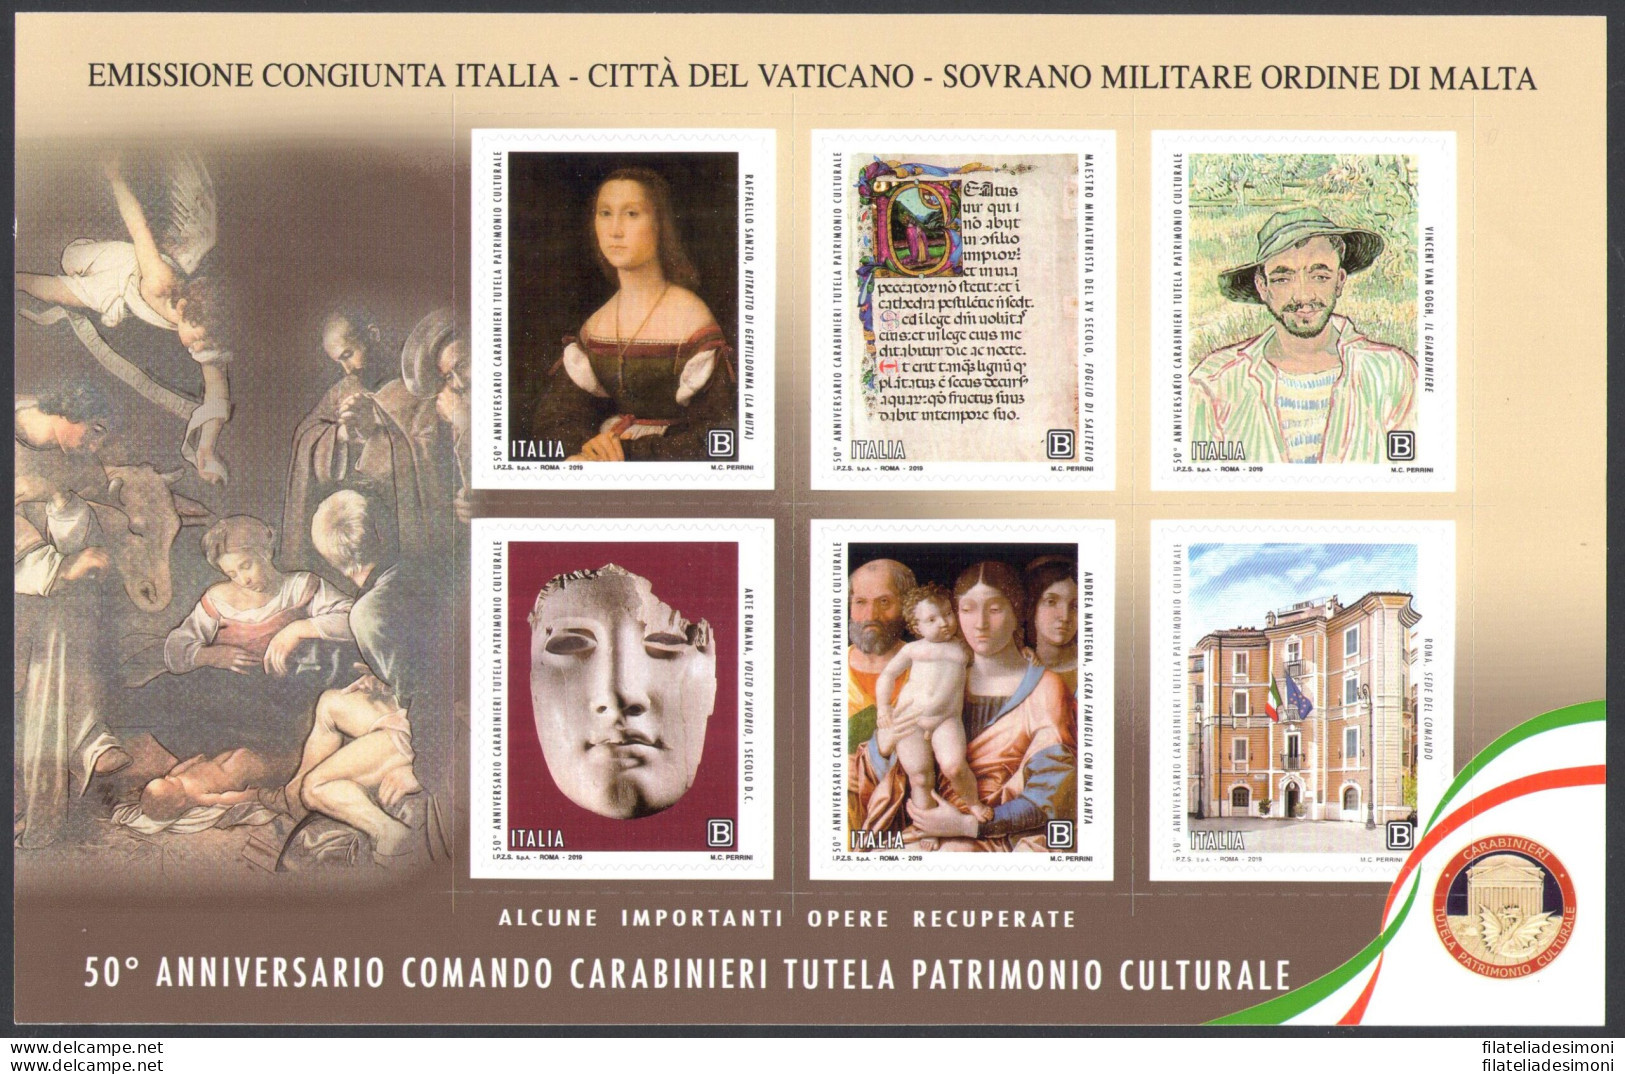 2019 Italia Repubblica, Annata completa , francobolli nuovi , 73 valori + 5 Fogl